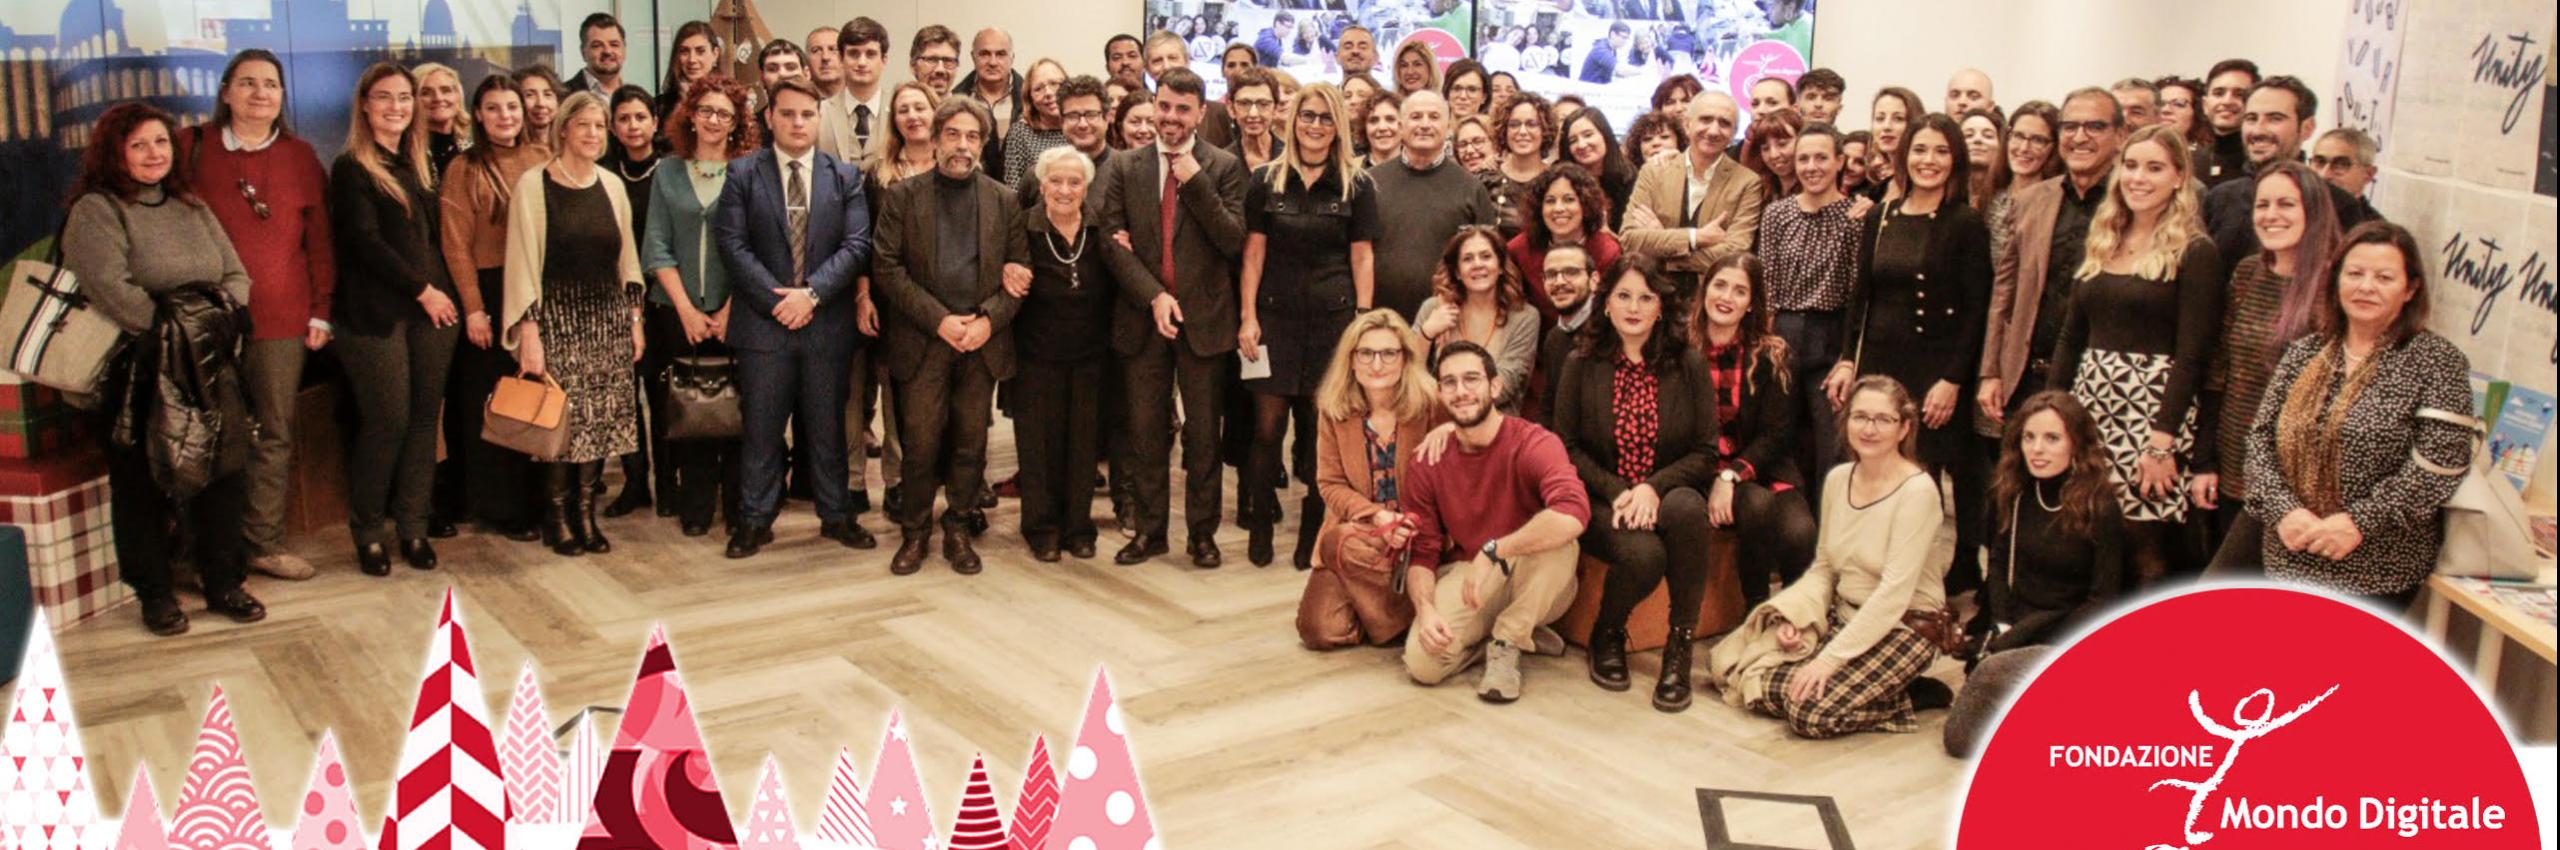 Auguri di buone feste dallo staff della Fondazione Mondo Digitale